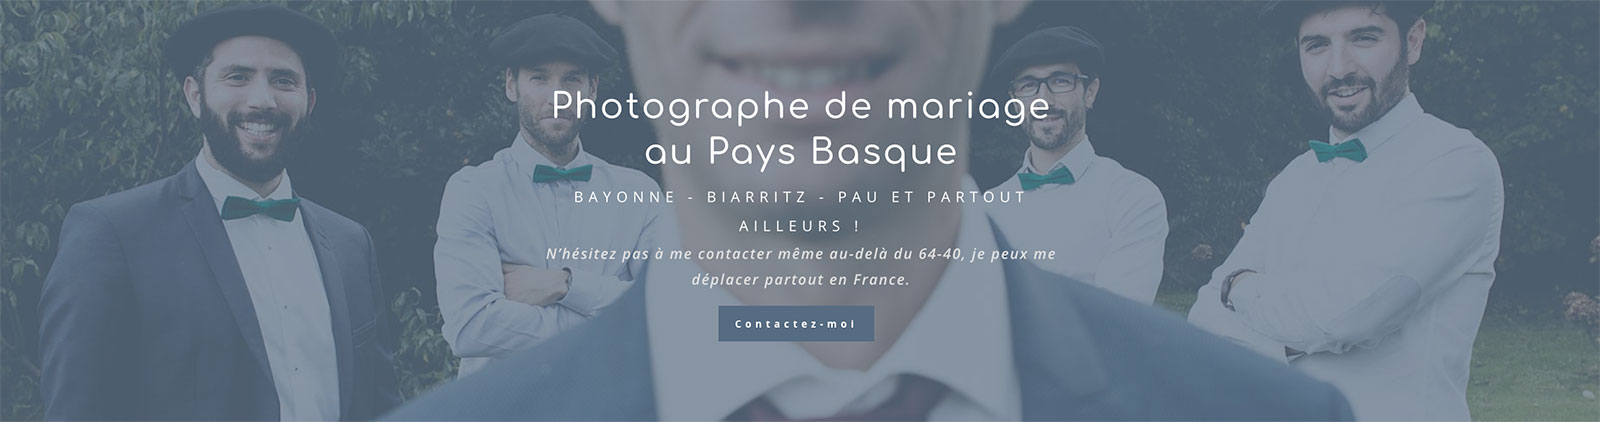 photographe-mariage-paysbasque